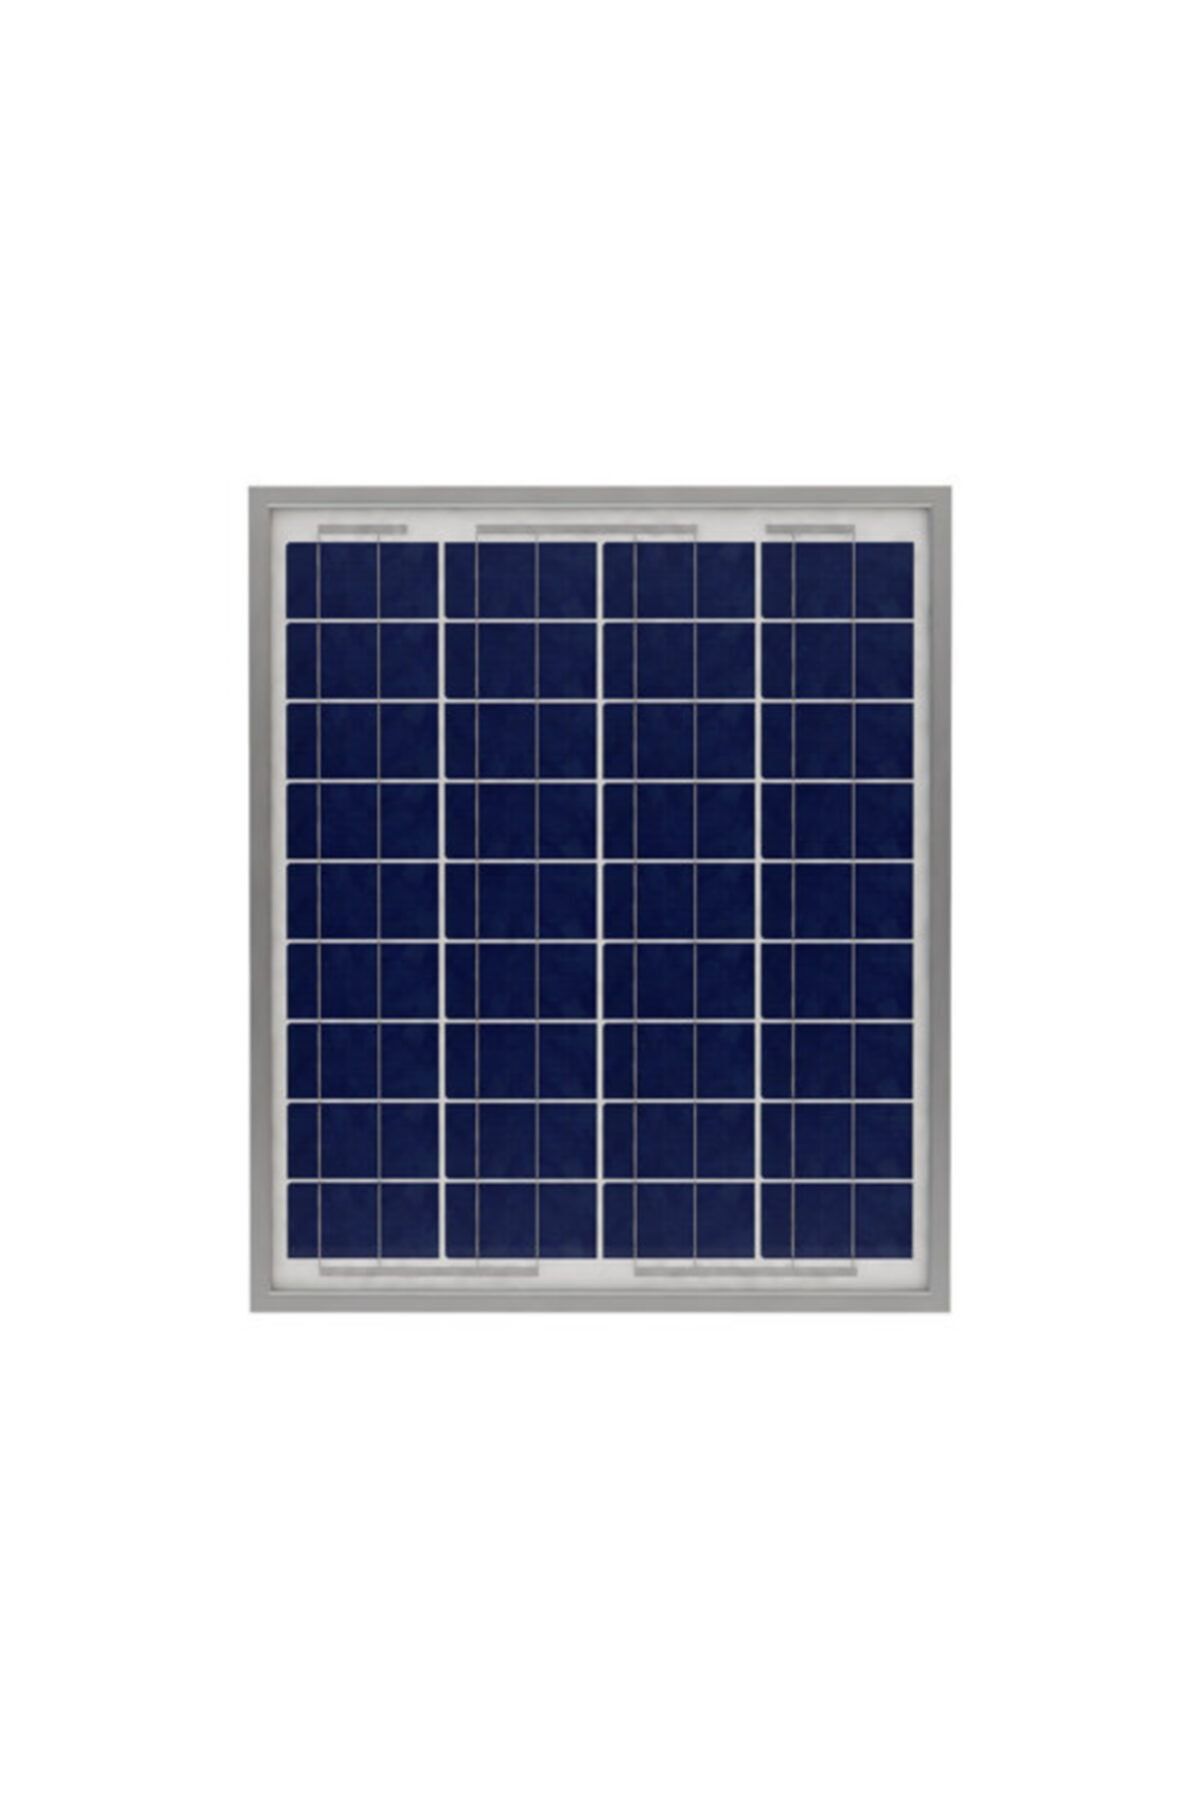 Aksun Enerji 20-22 Watt Polikristal Güneş Paneli Solar Panel